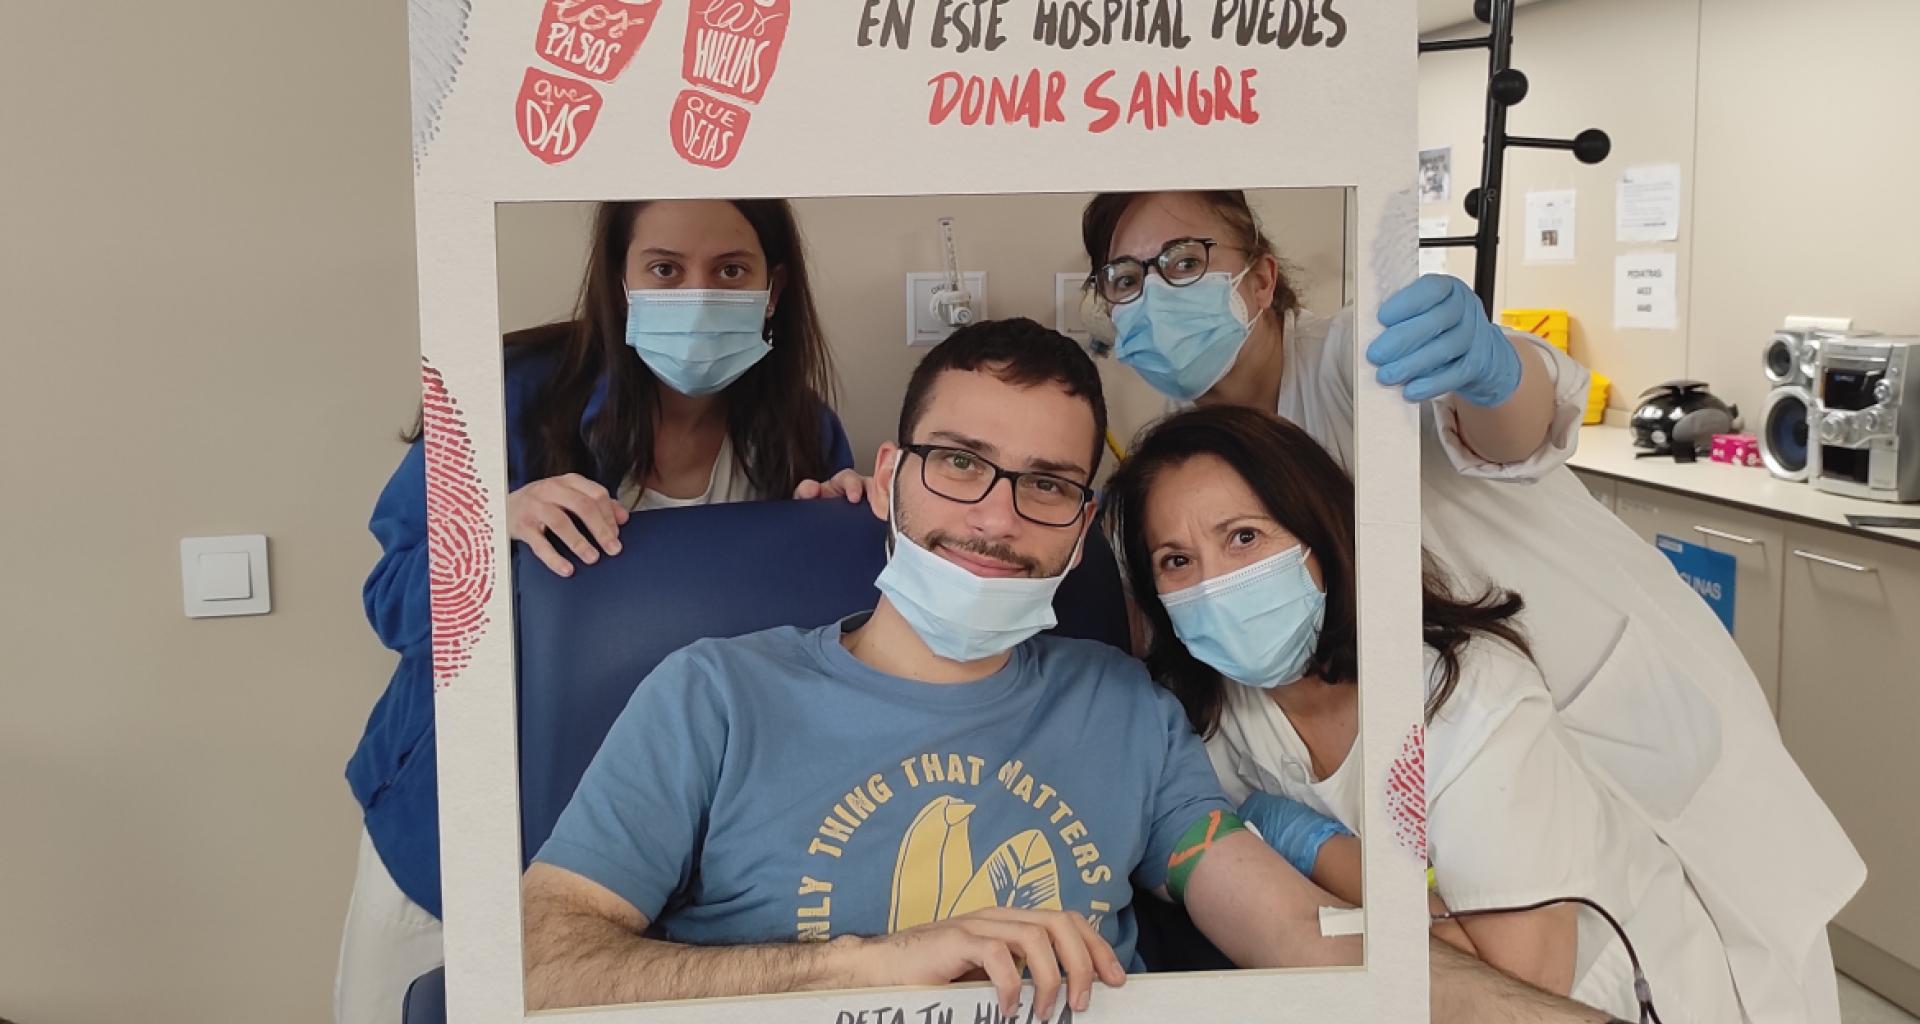 El Hospital de Fuenlabrada celebra un maratón de donación de sangre los días 13 y 14 de abril